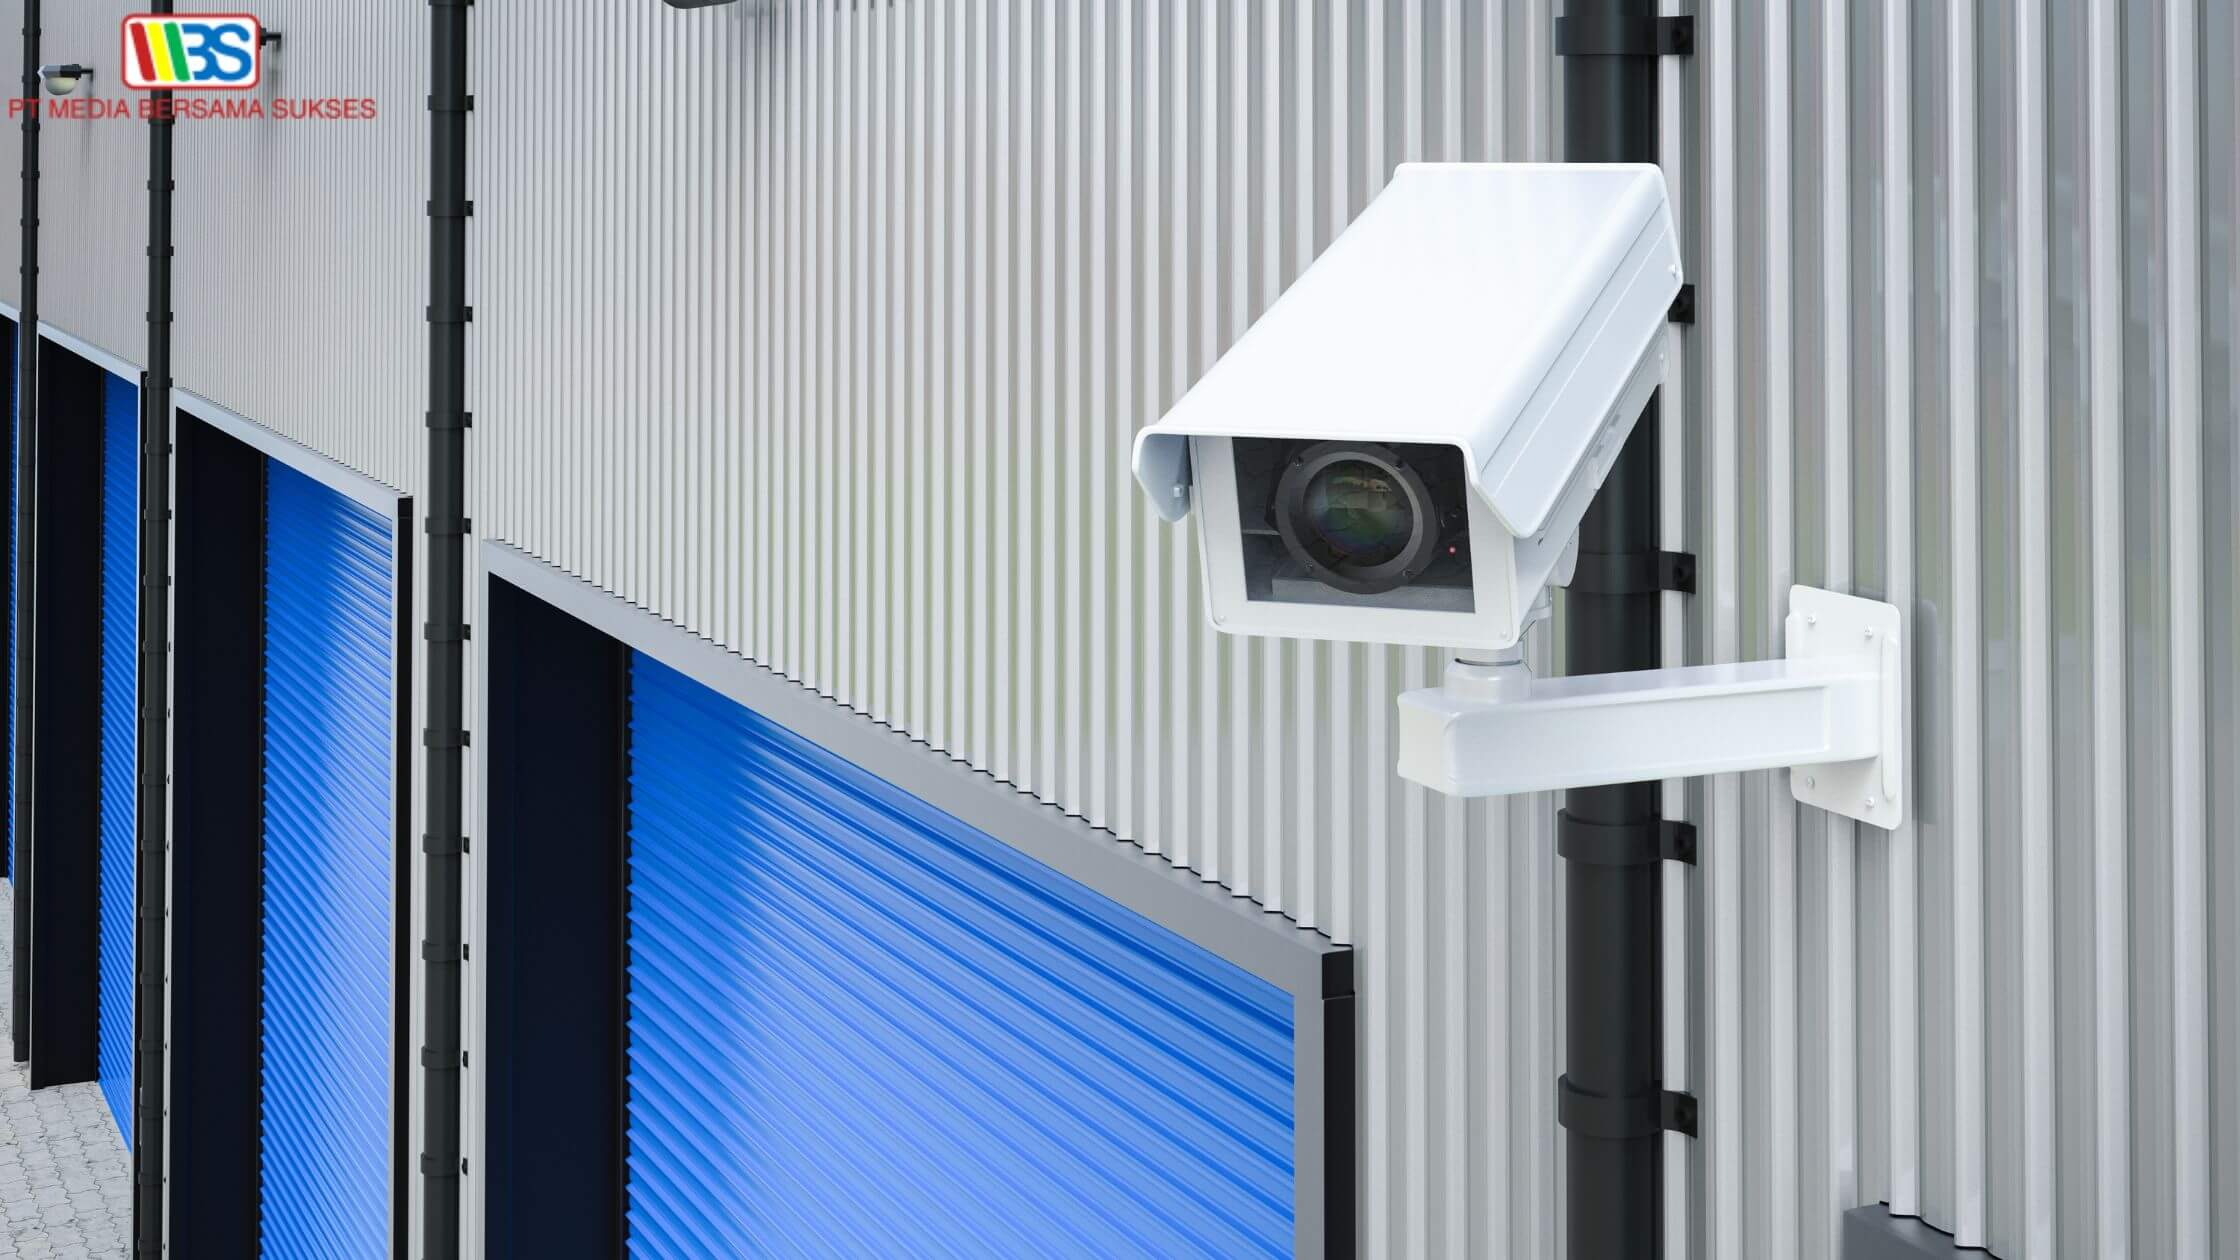 Solusi Keamanan dan Inventaris AI Based Menggunakan CCTV